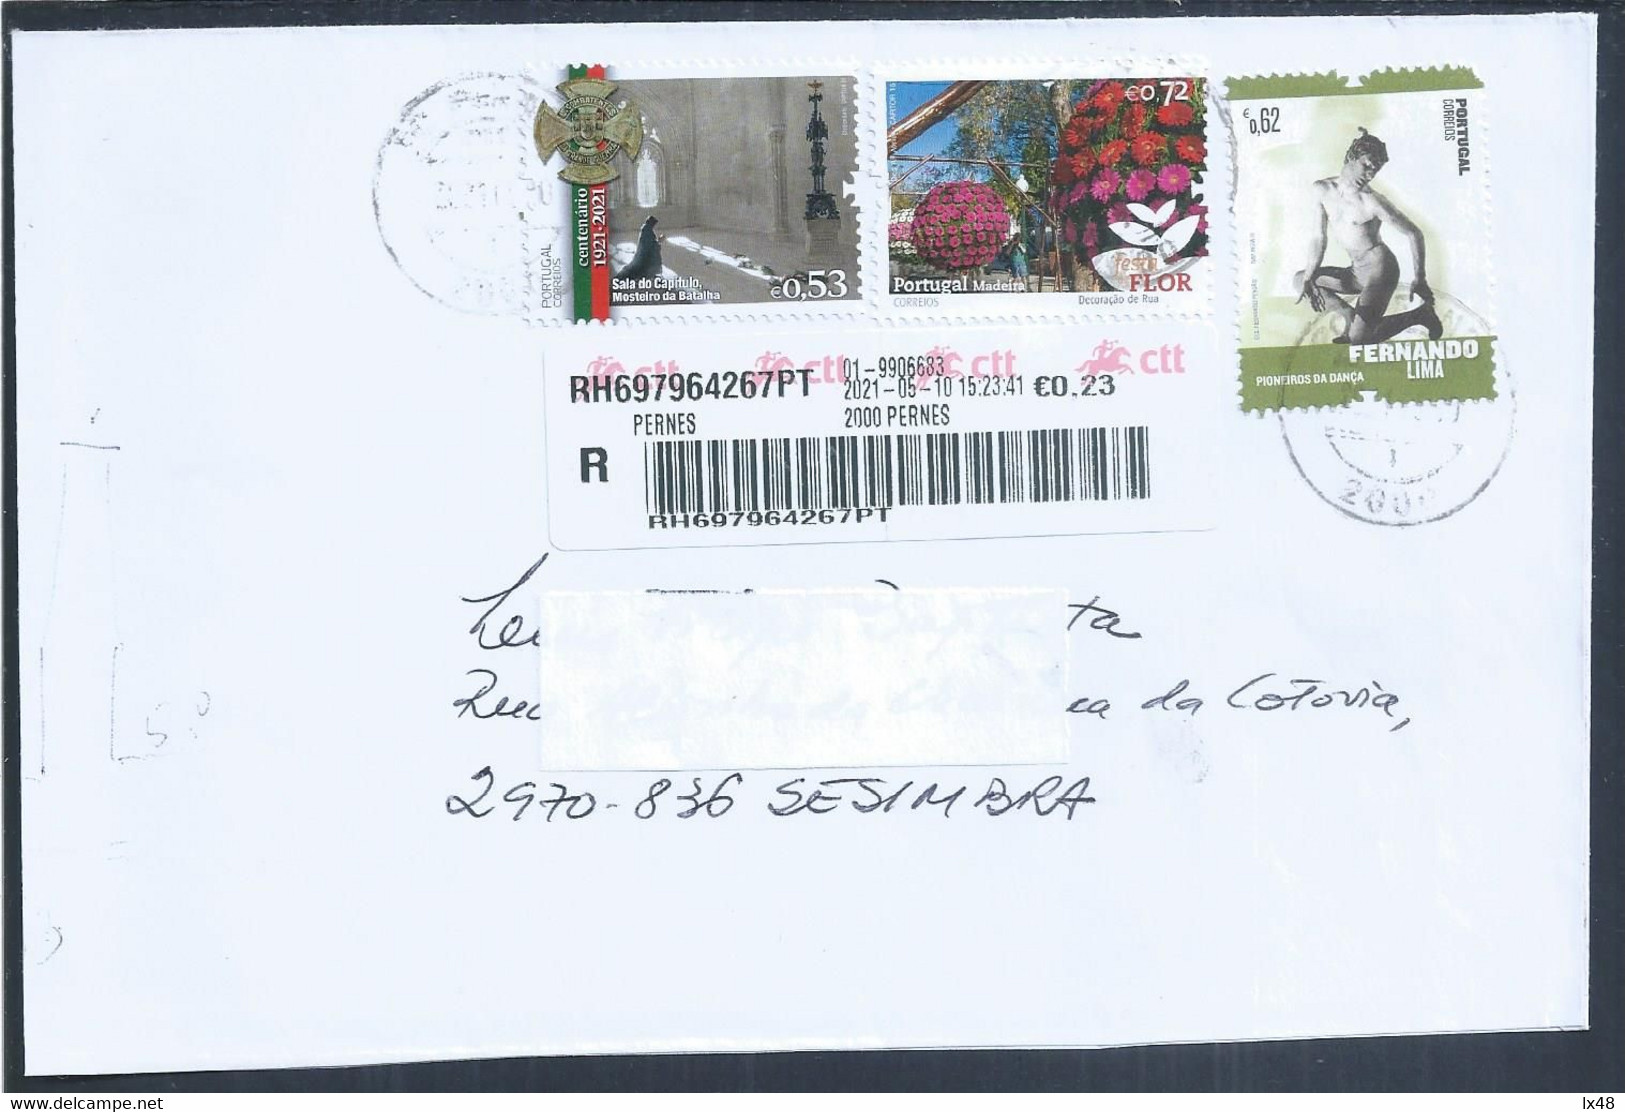 Carta Registada De Pernes, Stamps Mosteiro Da Batalha, Flores Da Madeira E Bailarino Fernando Lima. Dancer. Combatentes - Lettres & Documents